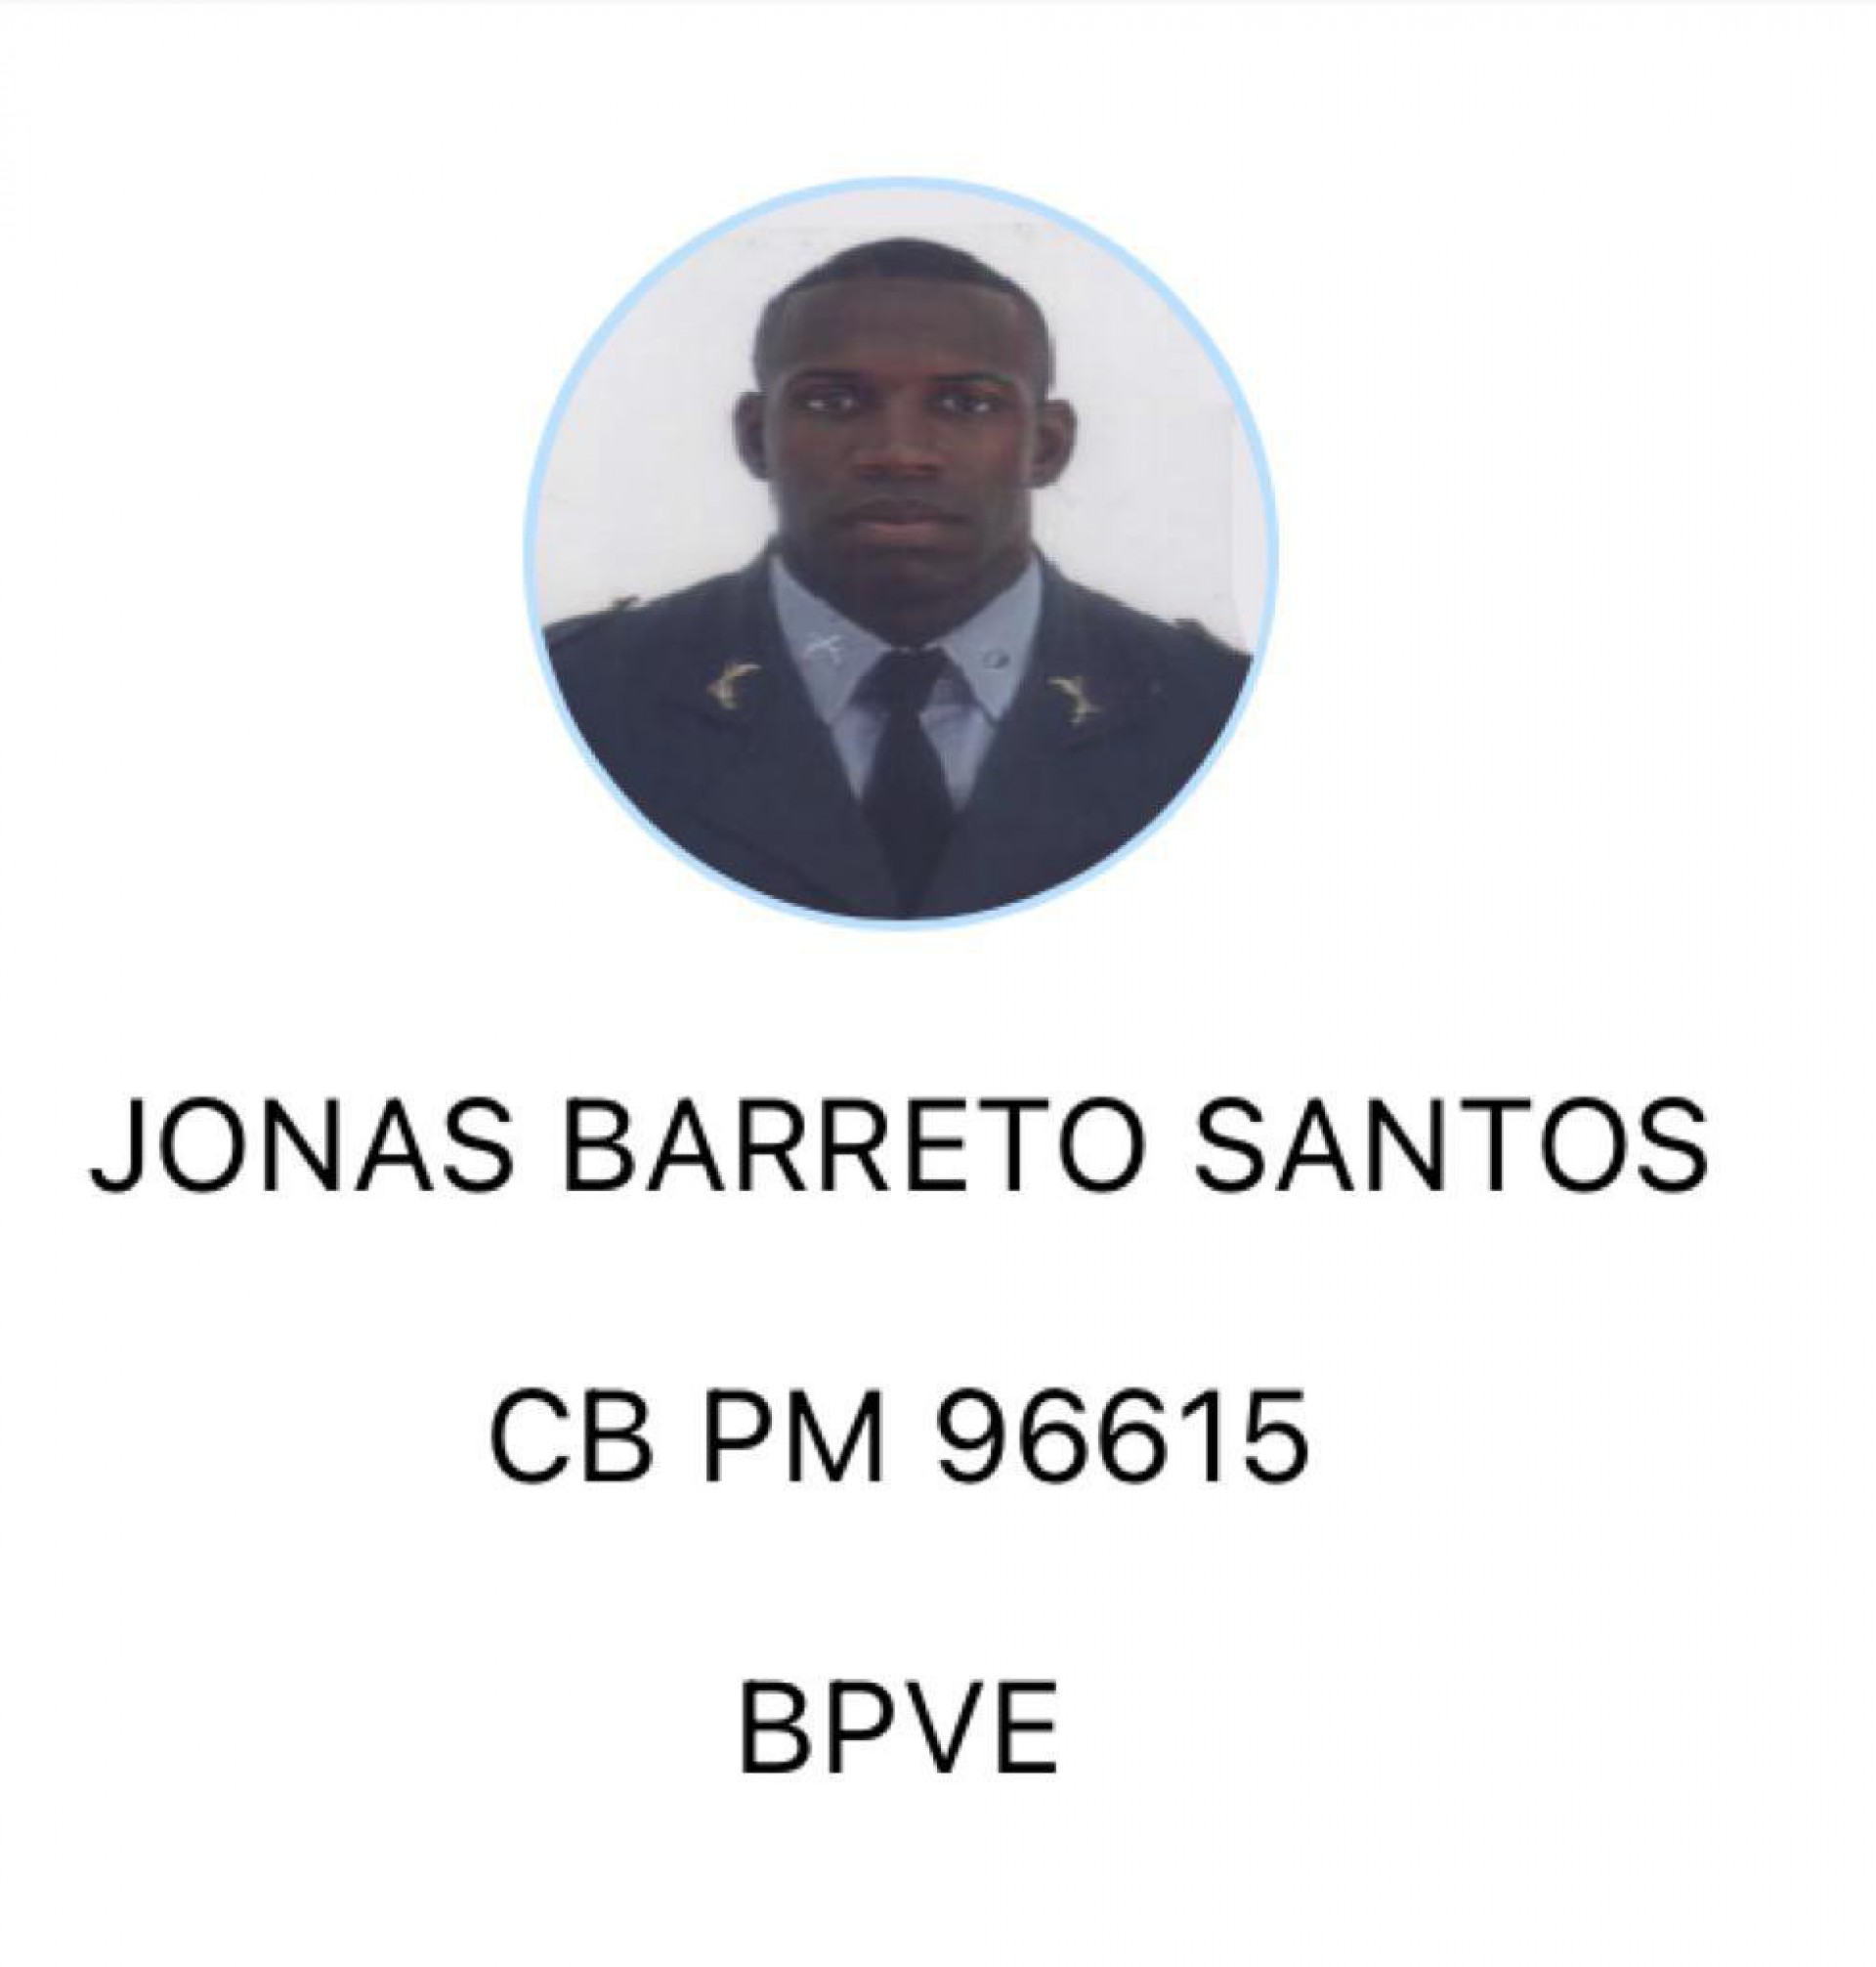 Cabo Jonas Barreto Santos foi preso em flagrante pelo crime